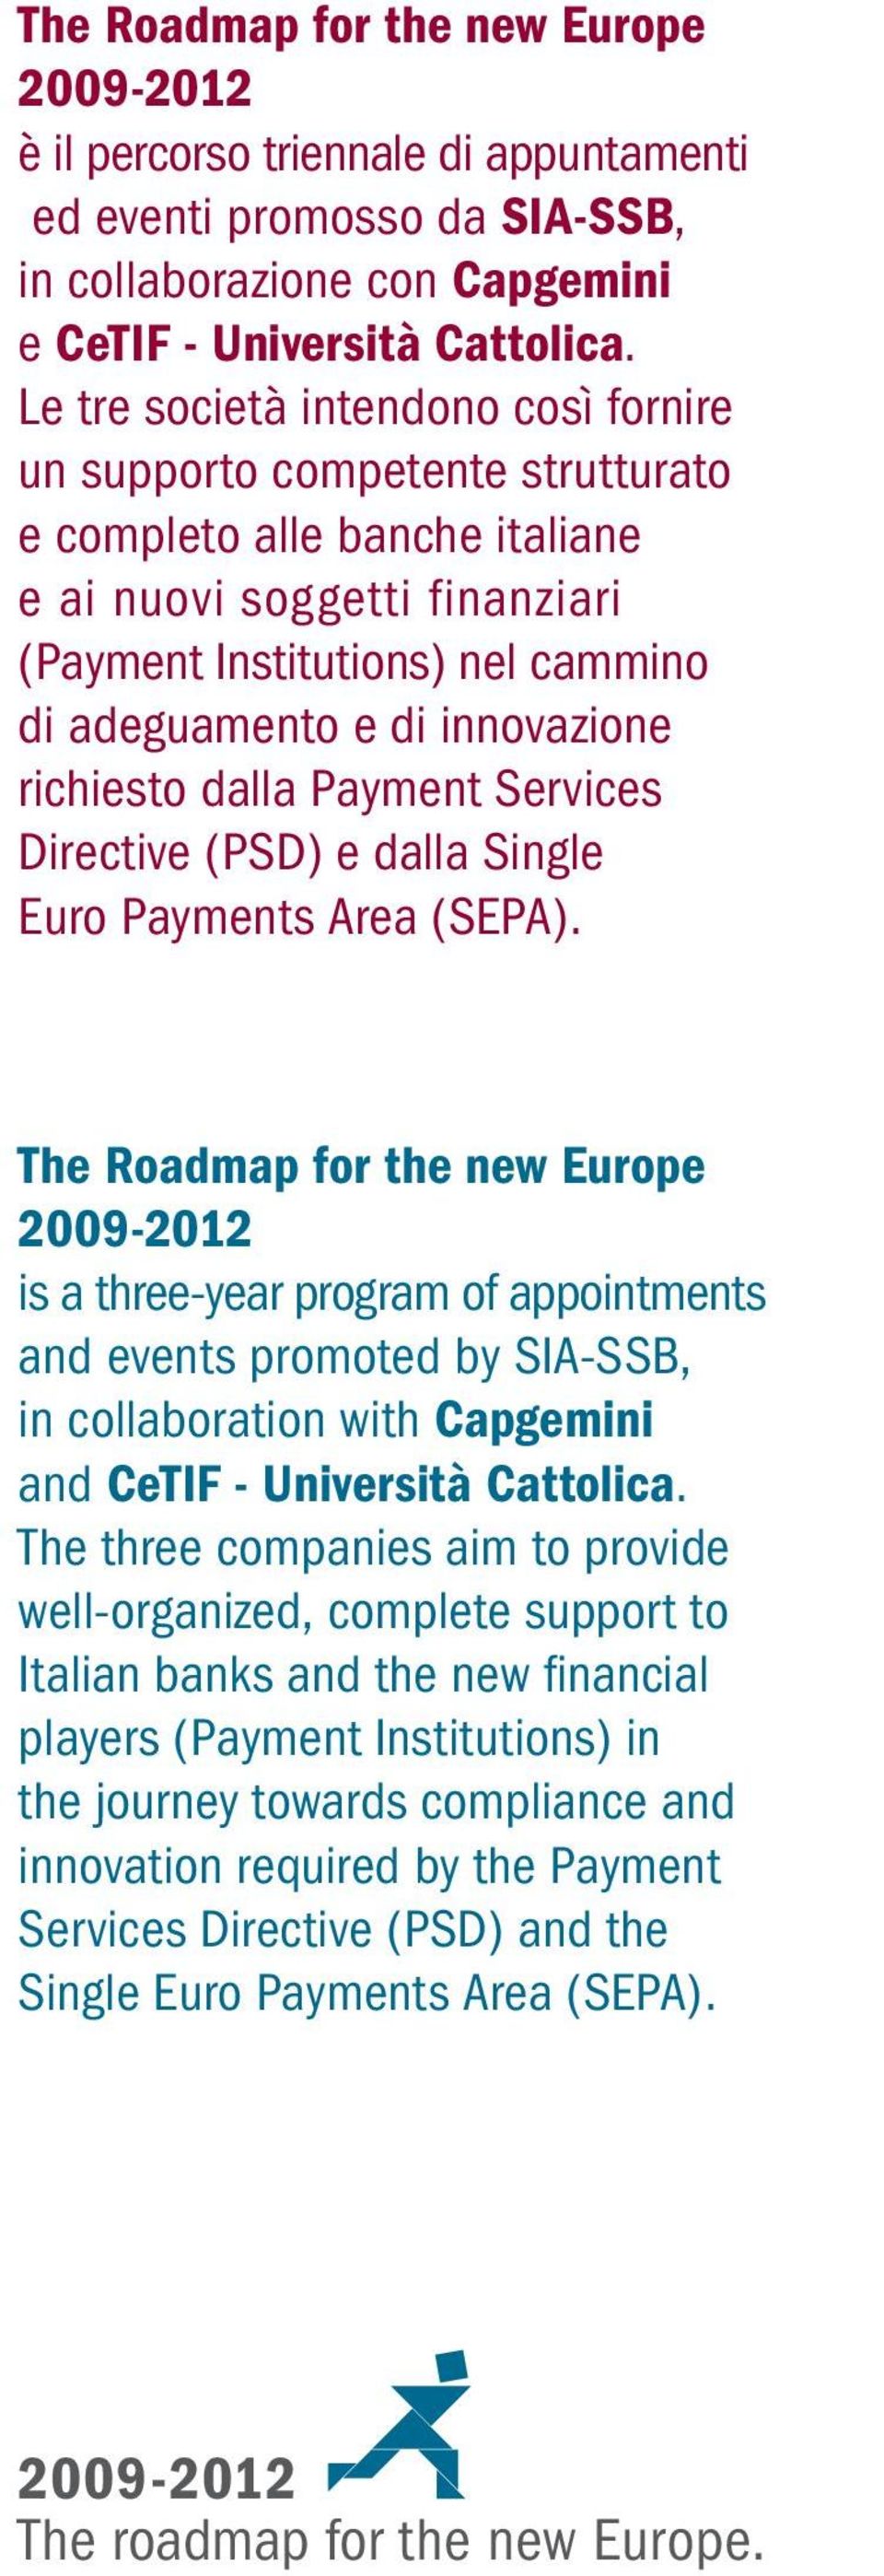 innovazione richiesto dalla Payment Services Directive (PSD) e dalla Single Euro Payments Area (SEPA).